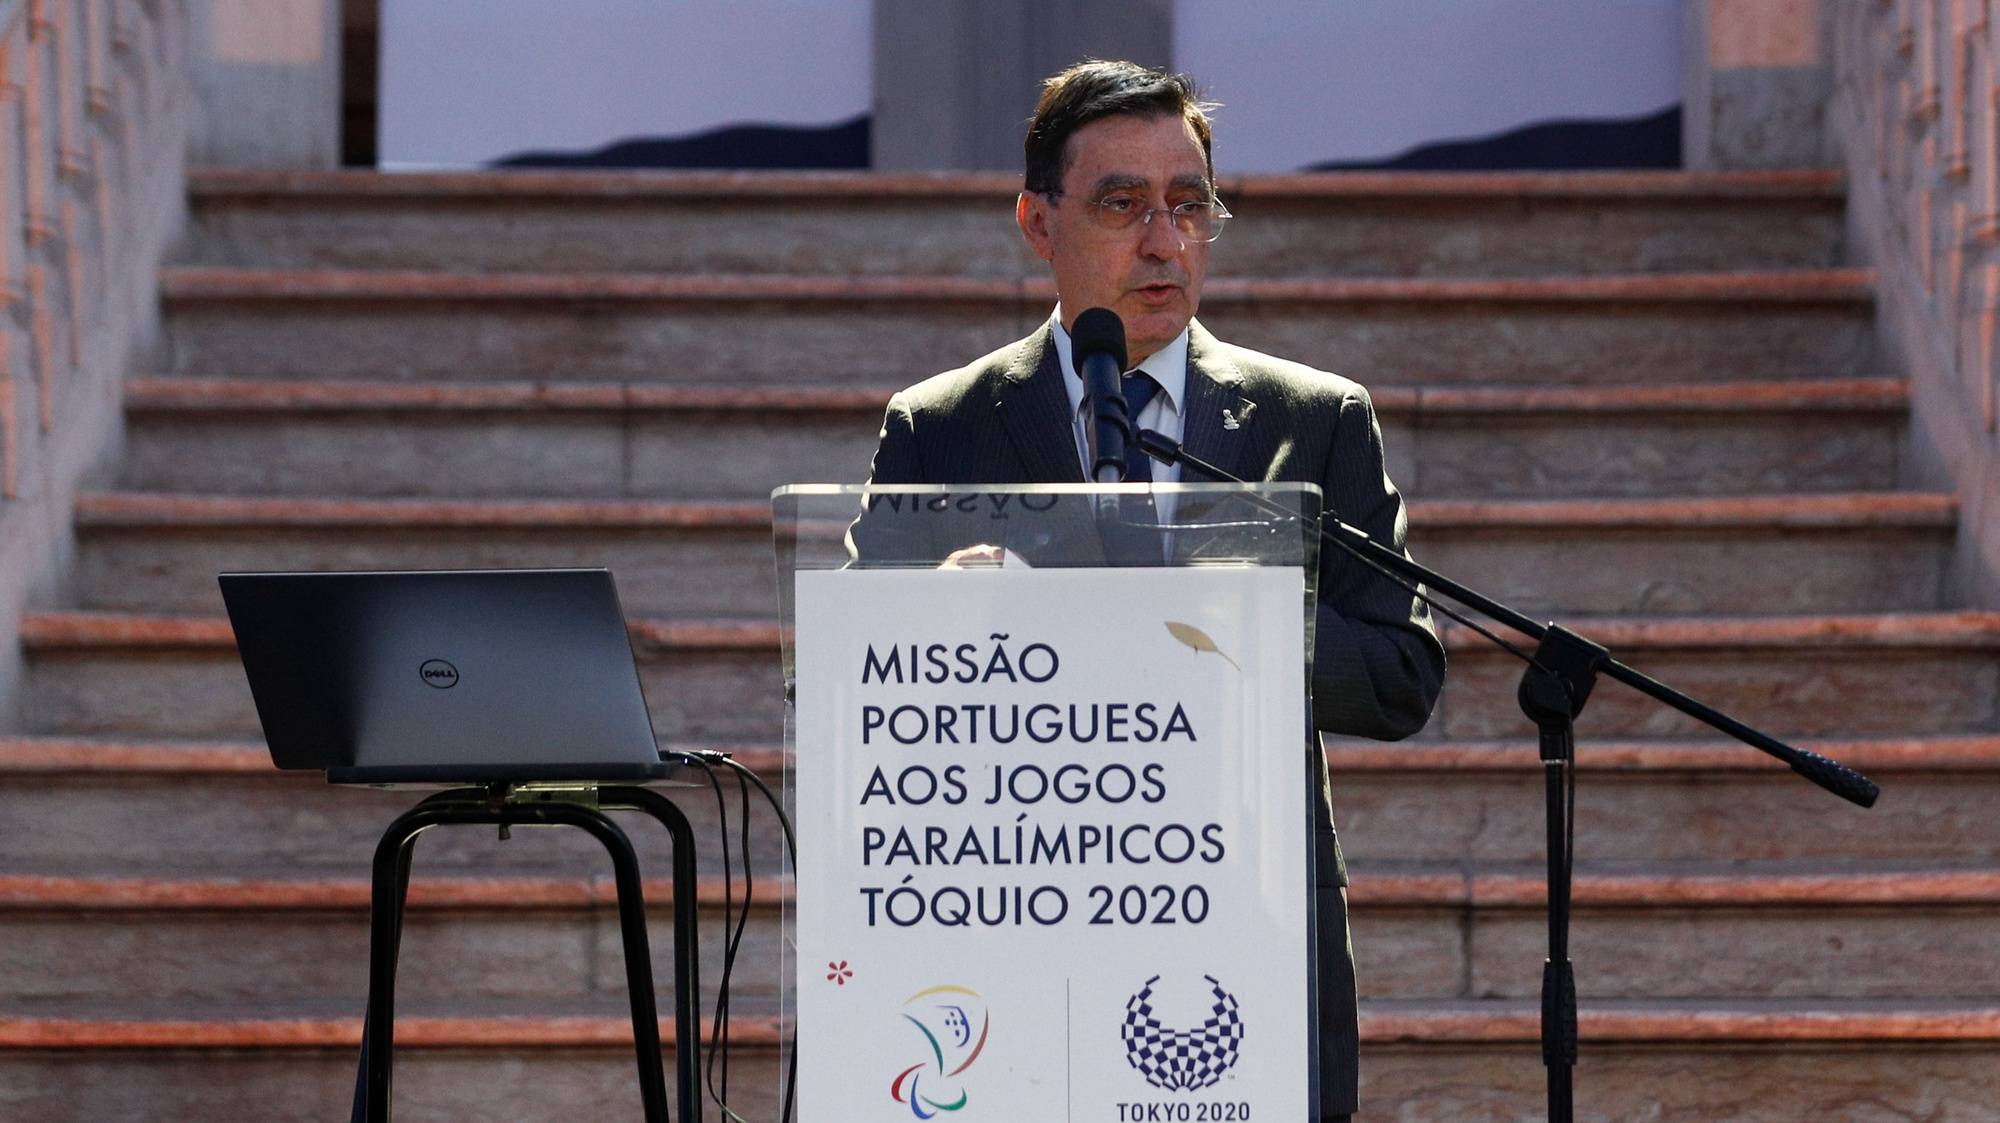 O presidente do Comité Paralímpico de Portugal, José Manuel Lourenço, discursa durante a cerimónia de apresentação da Missão Portuguesa aos Jogos Paralímpicos Tóquio 2020, com a presença dos representantes da direção da Missão Paralímpica, da comissão executiva do Comité Paralímpico de Portugal e de atletas de todas as modalidades com representação nos Jogos Paralímpicos, Loures, 16 de julho de 2021. ANTÓNIO COTRIM/LUSA